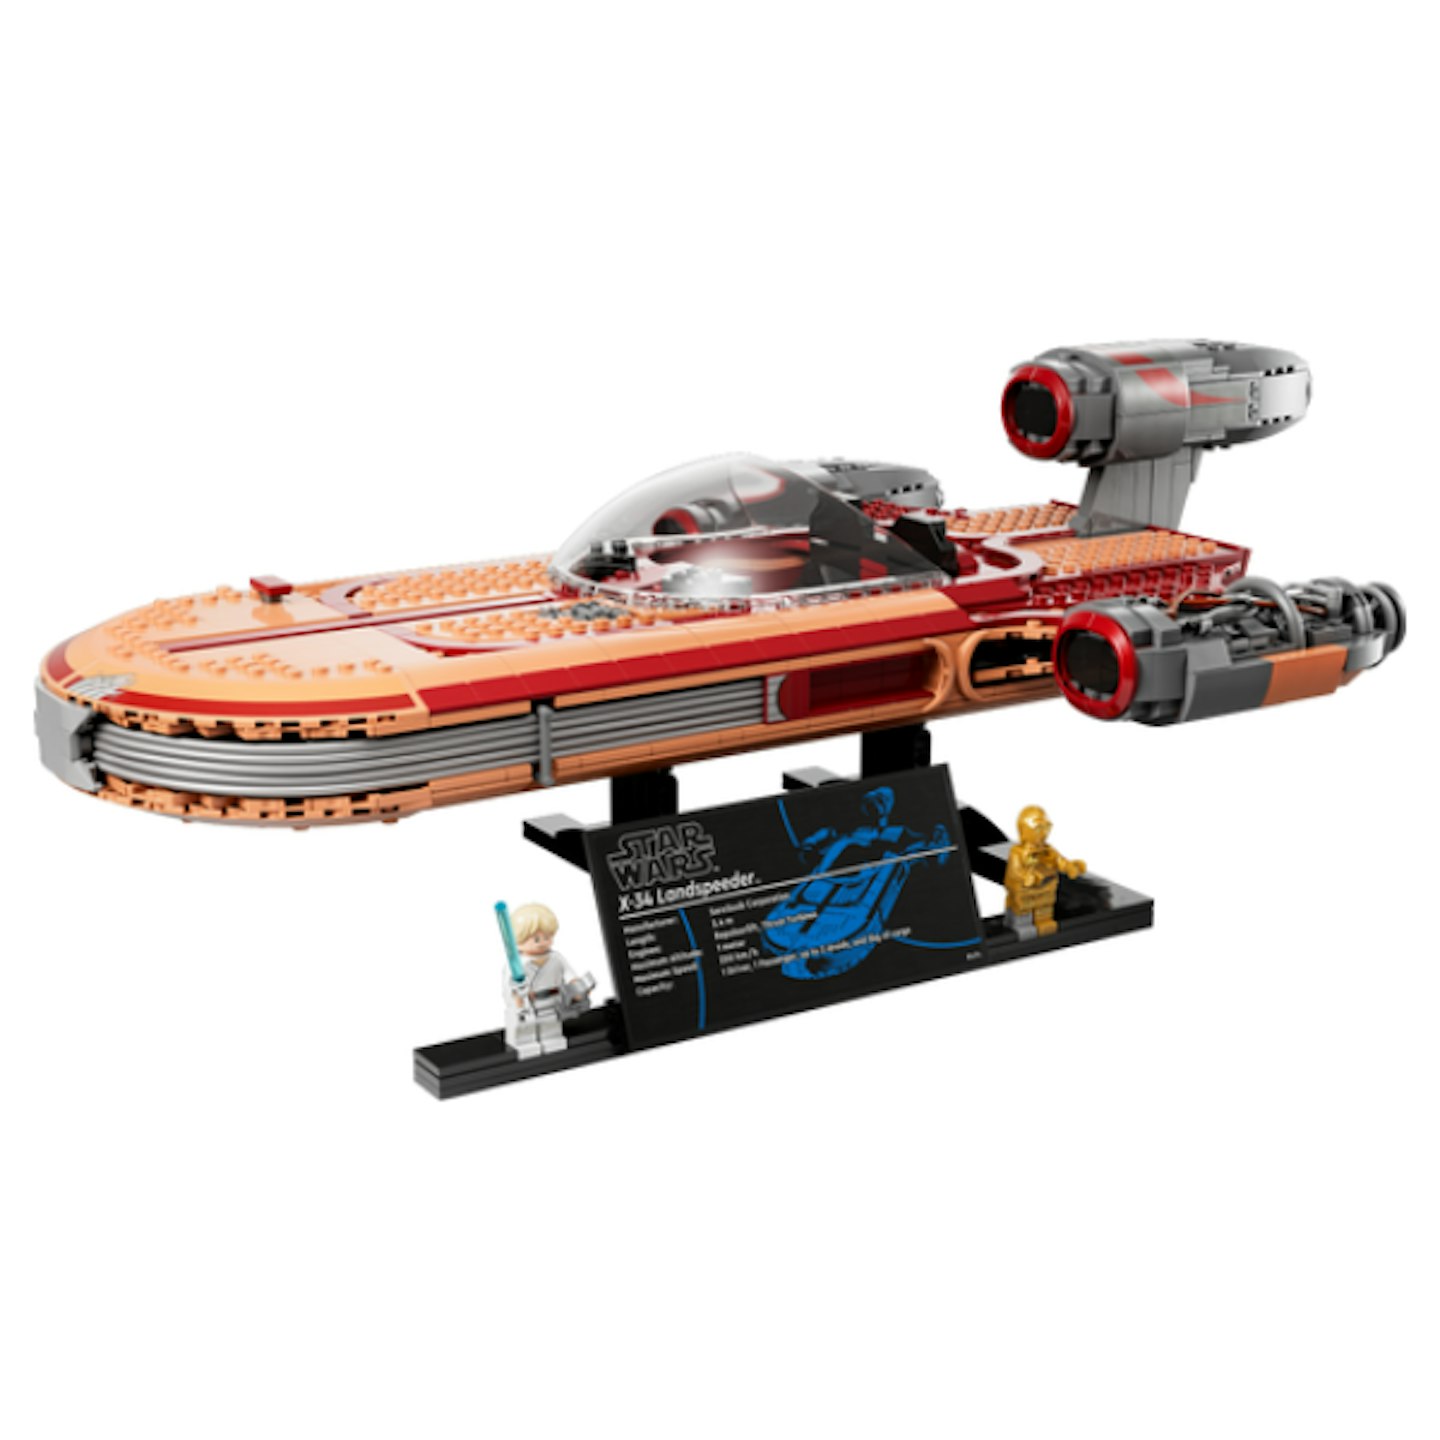 a Lego Star Wars Landspeeder